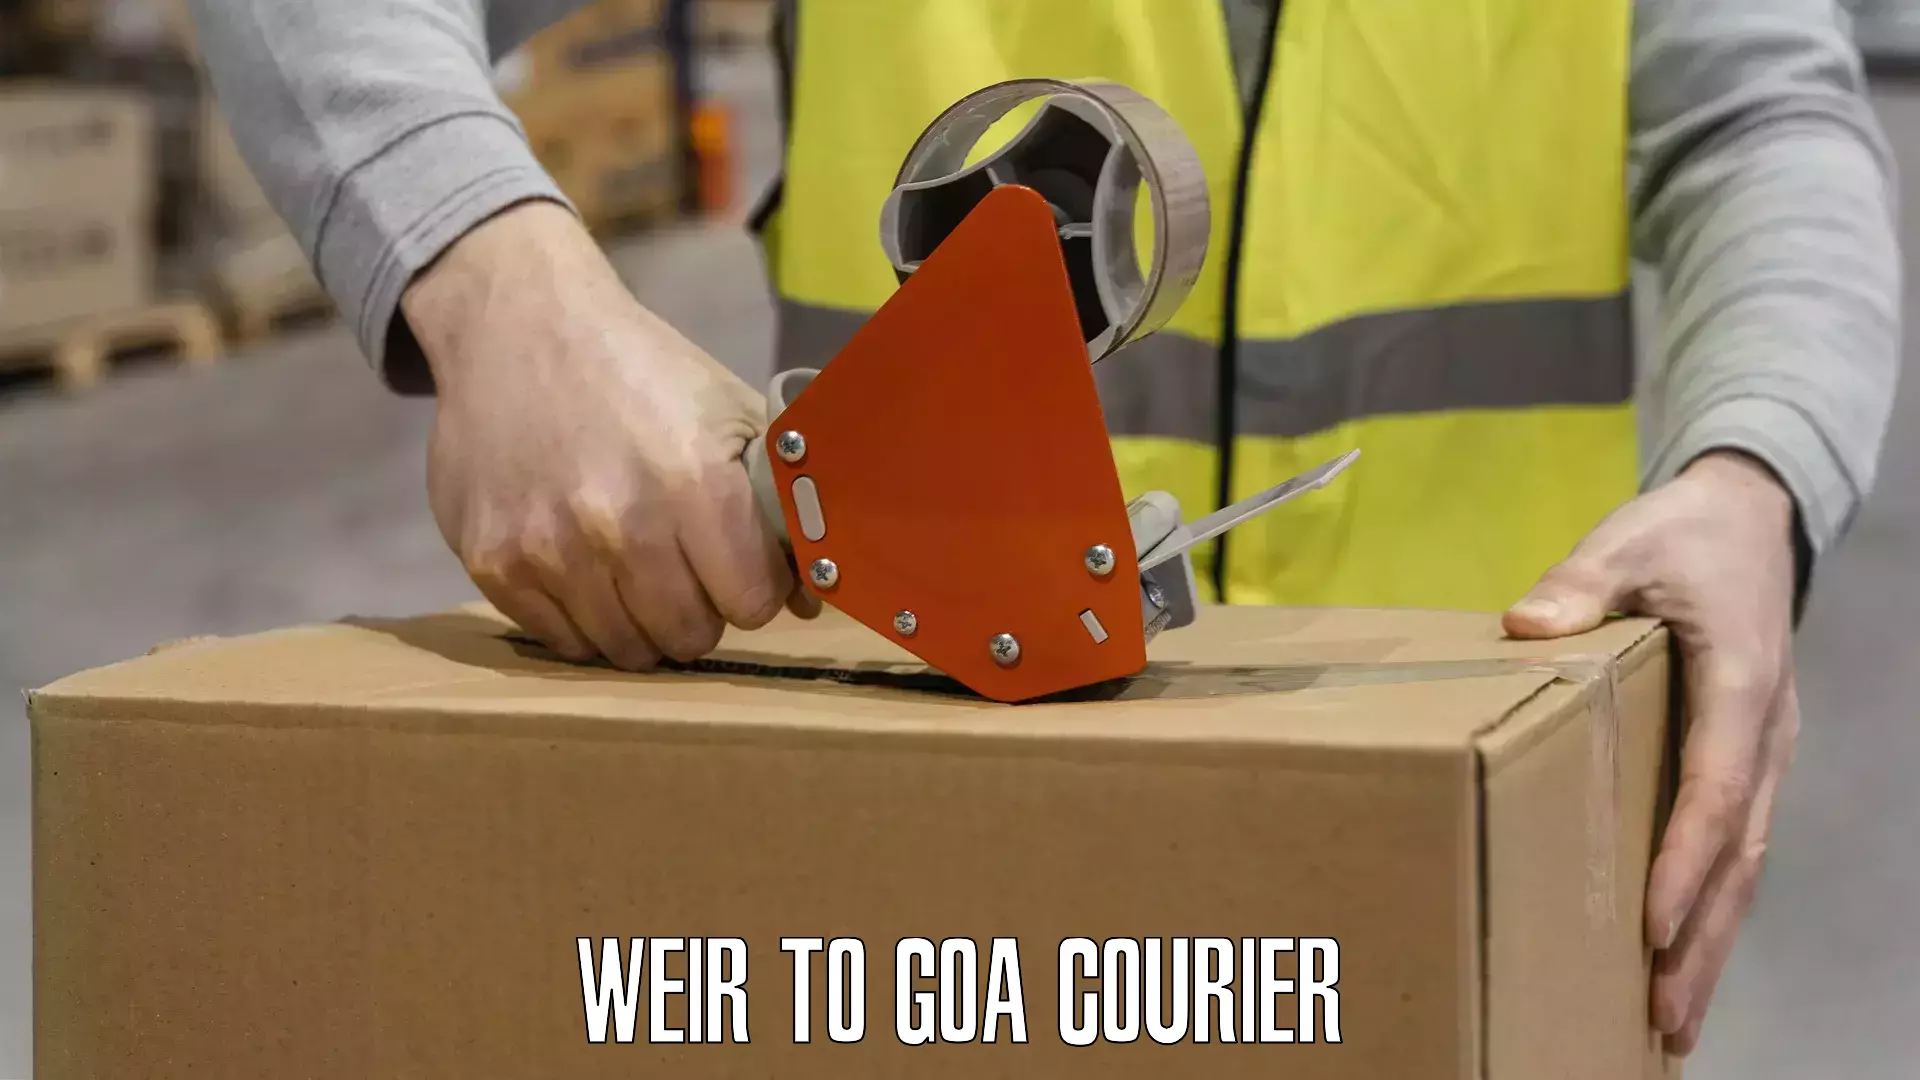 Premium courier services Weir to IIT Goa